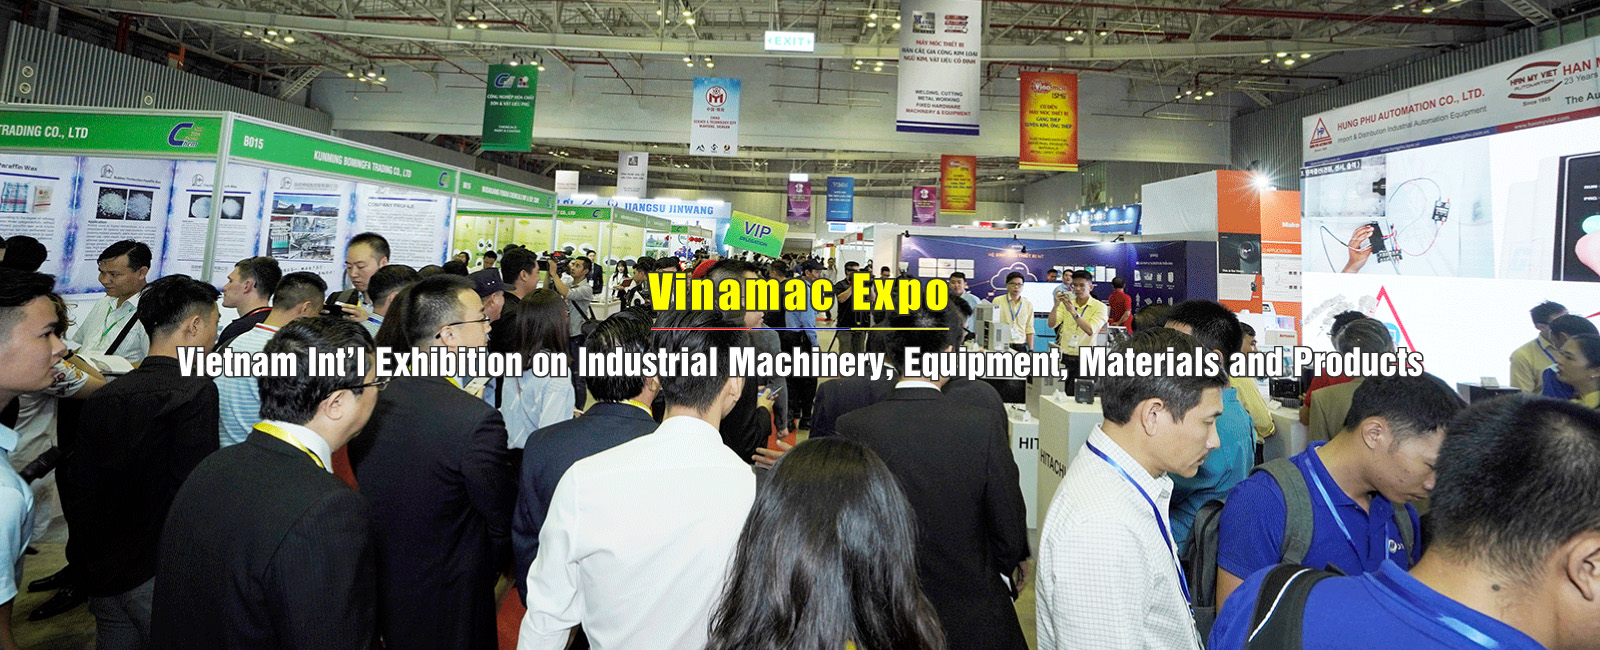 Vinamac Expo